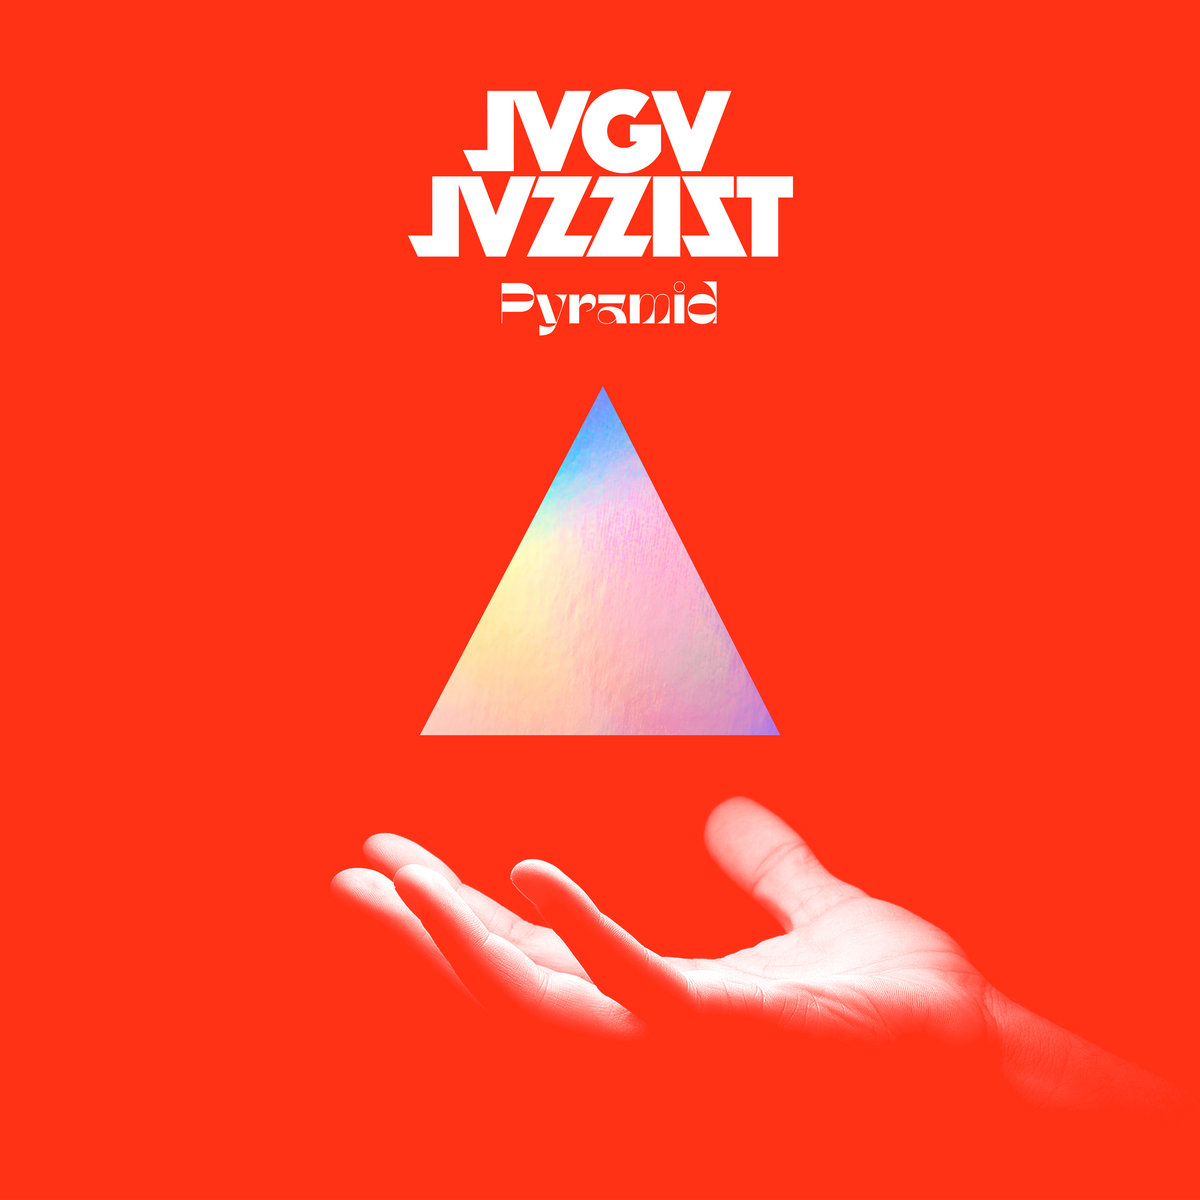 Jaga Jazzist – Pyramid (2020) [FLAC 24bit/44,1kHz]